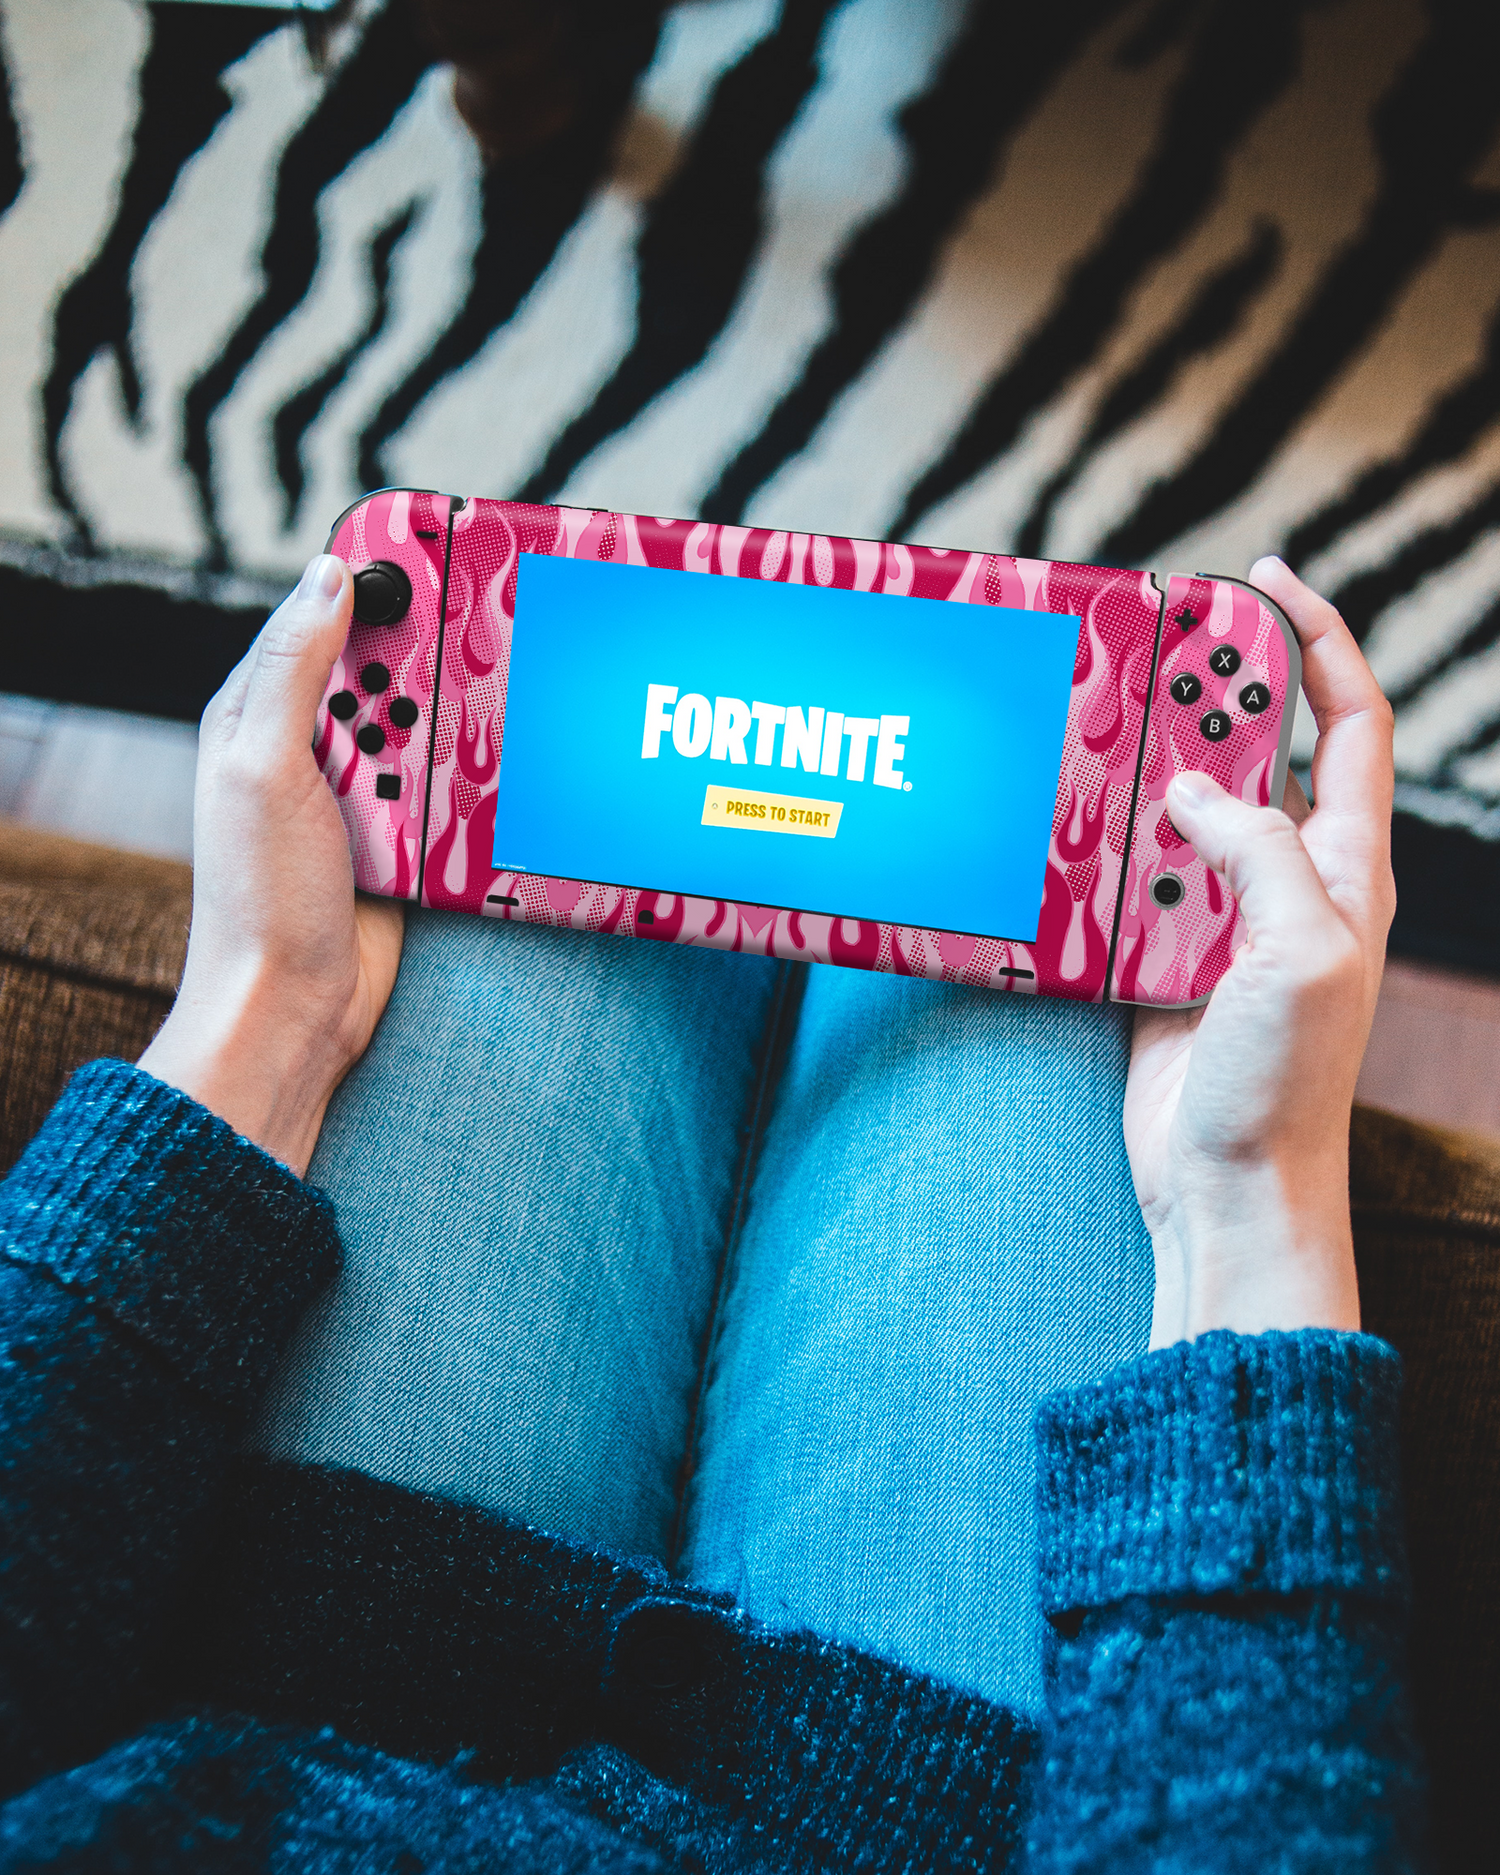 Pink Flames Konsolen Aufkleber für Nintendo Switch: Spielen mit beklebter Konsole